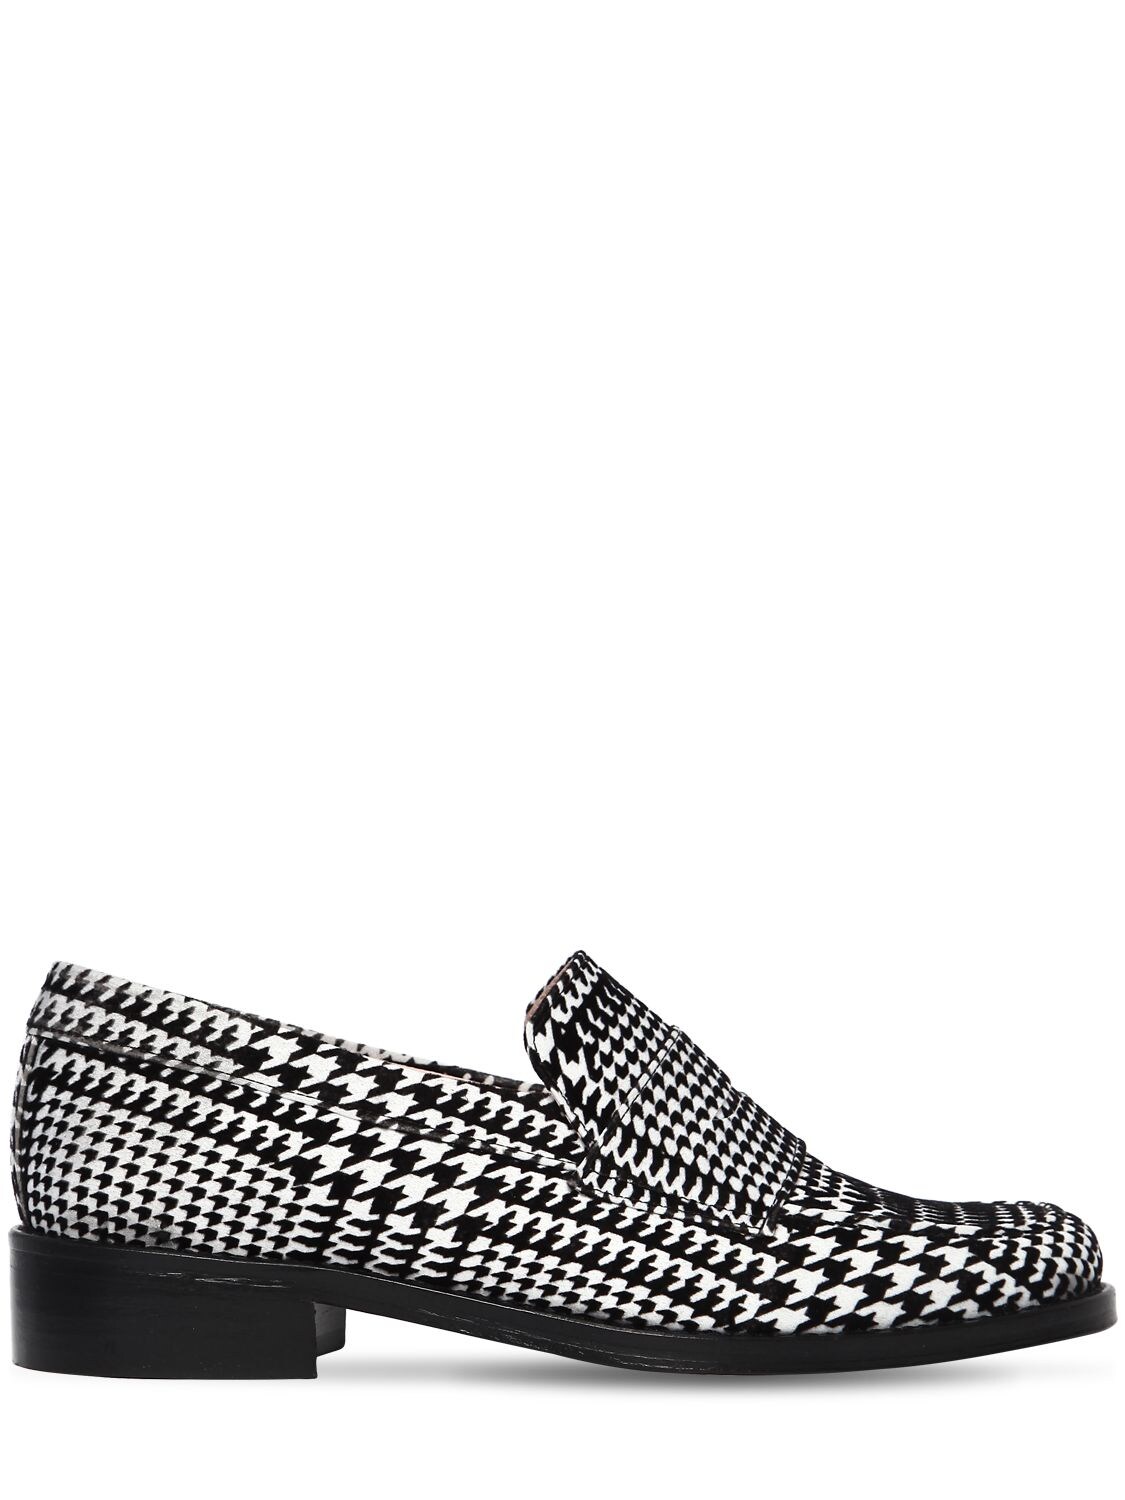 Leandra Medine 30mm Prince Of Wales Velvet Loafers In Black/white